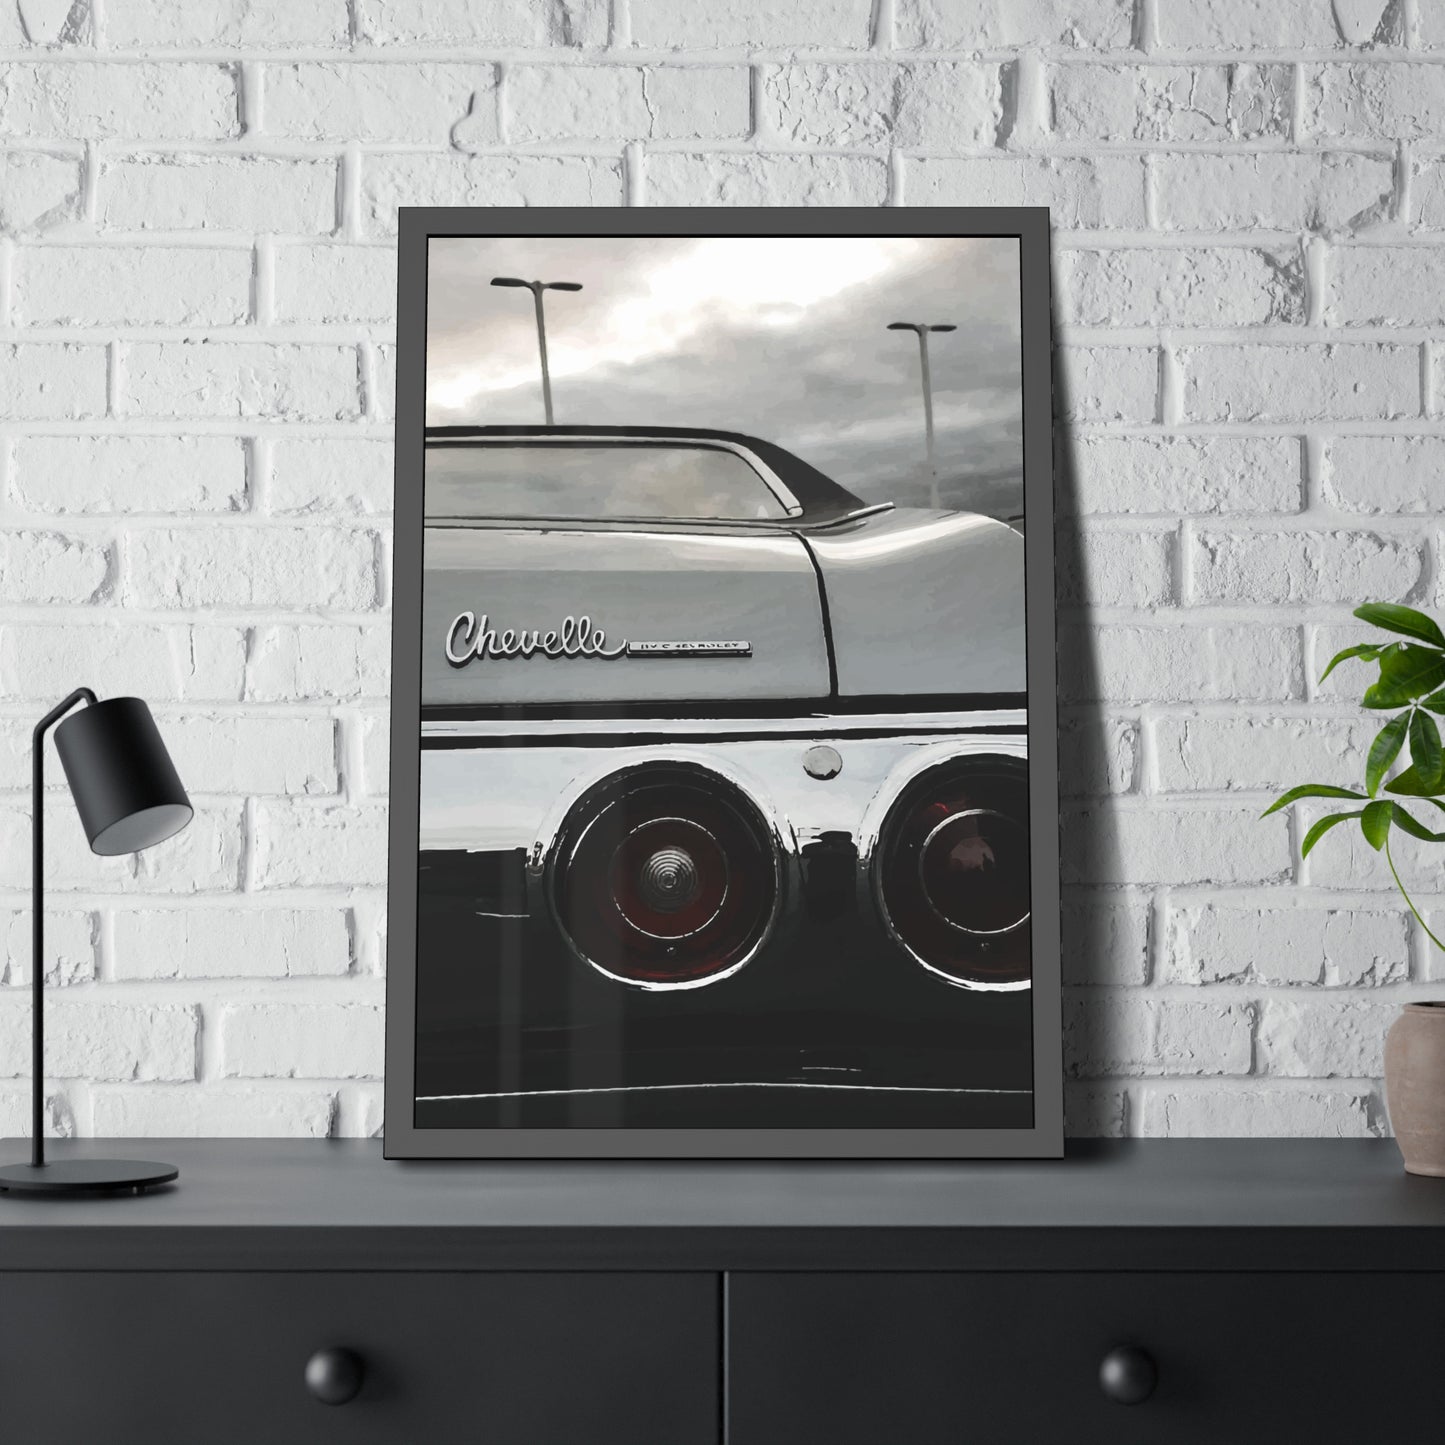 Old Chevelle Car Art Framed Poster